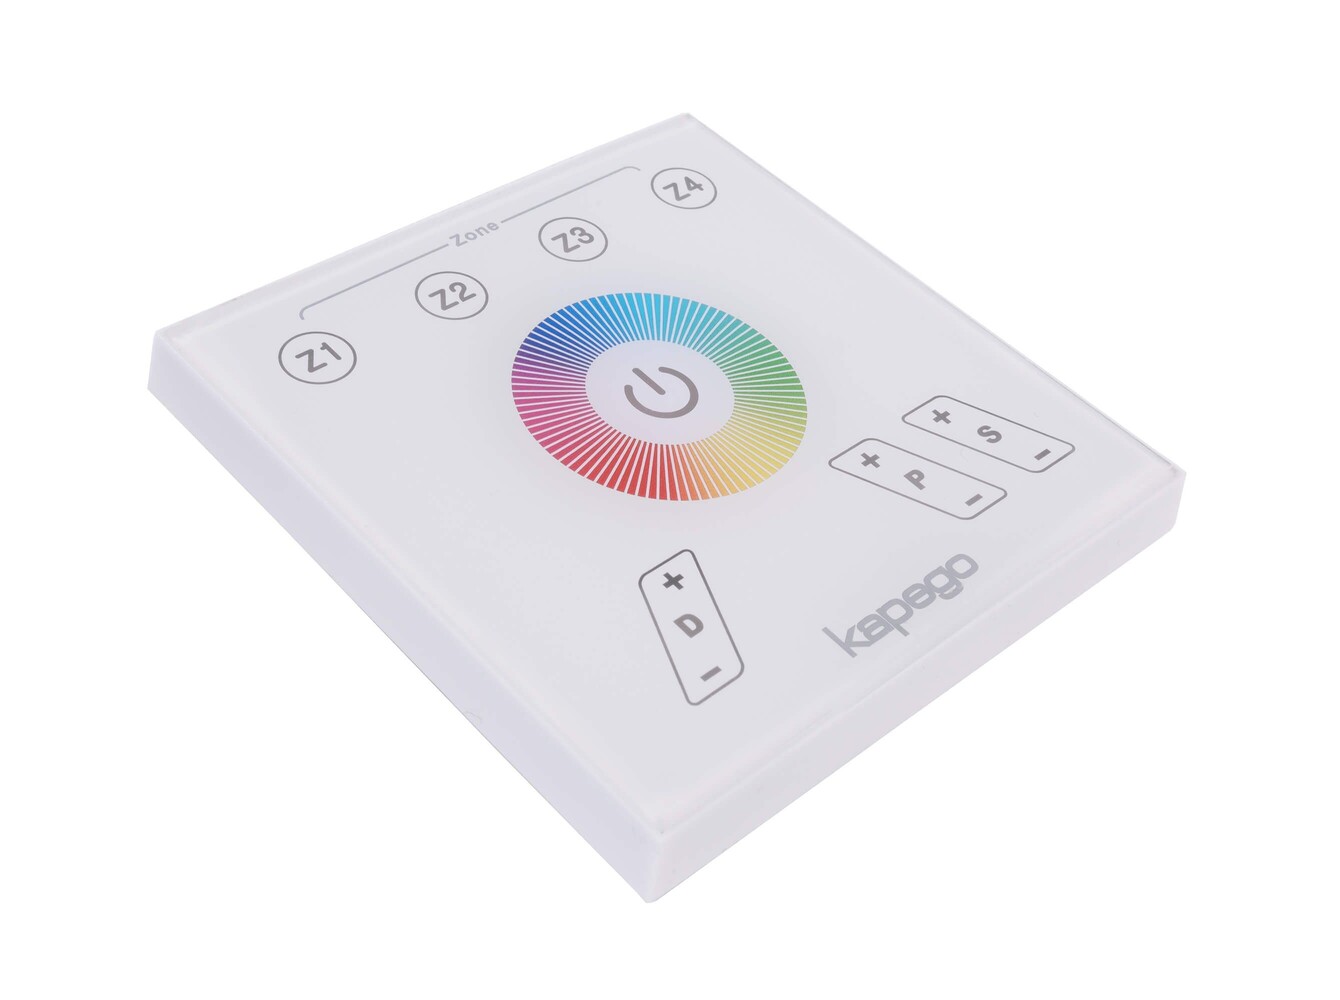 Leistungsfähiger Deko-Light Controller mit Touchpanel und variablem Farbsystem